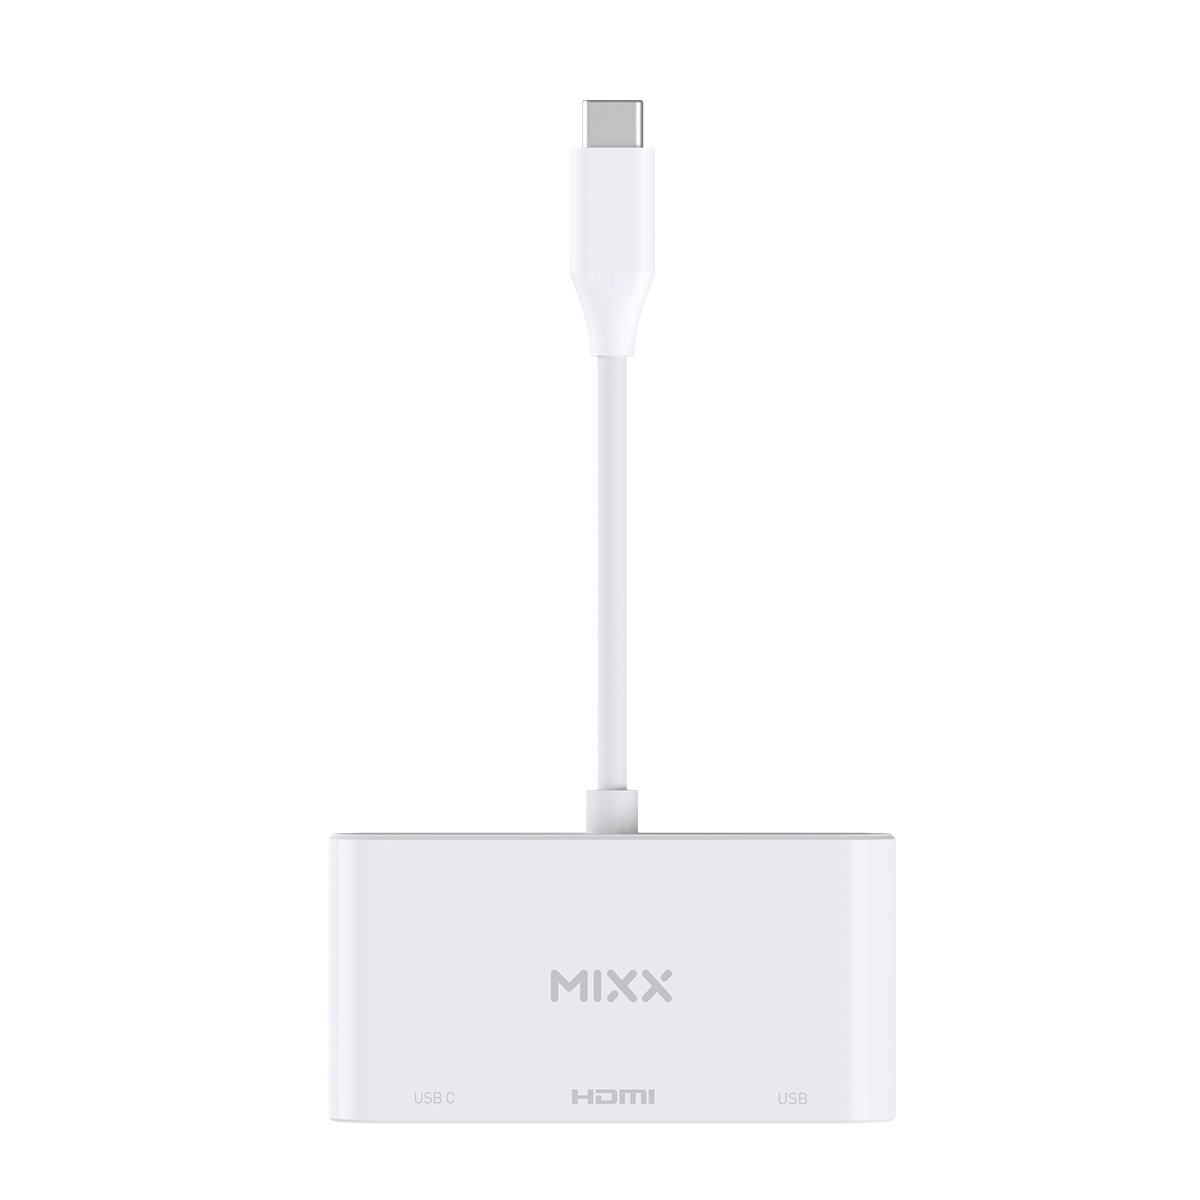 MIXX MultiPort 3 Adapter